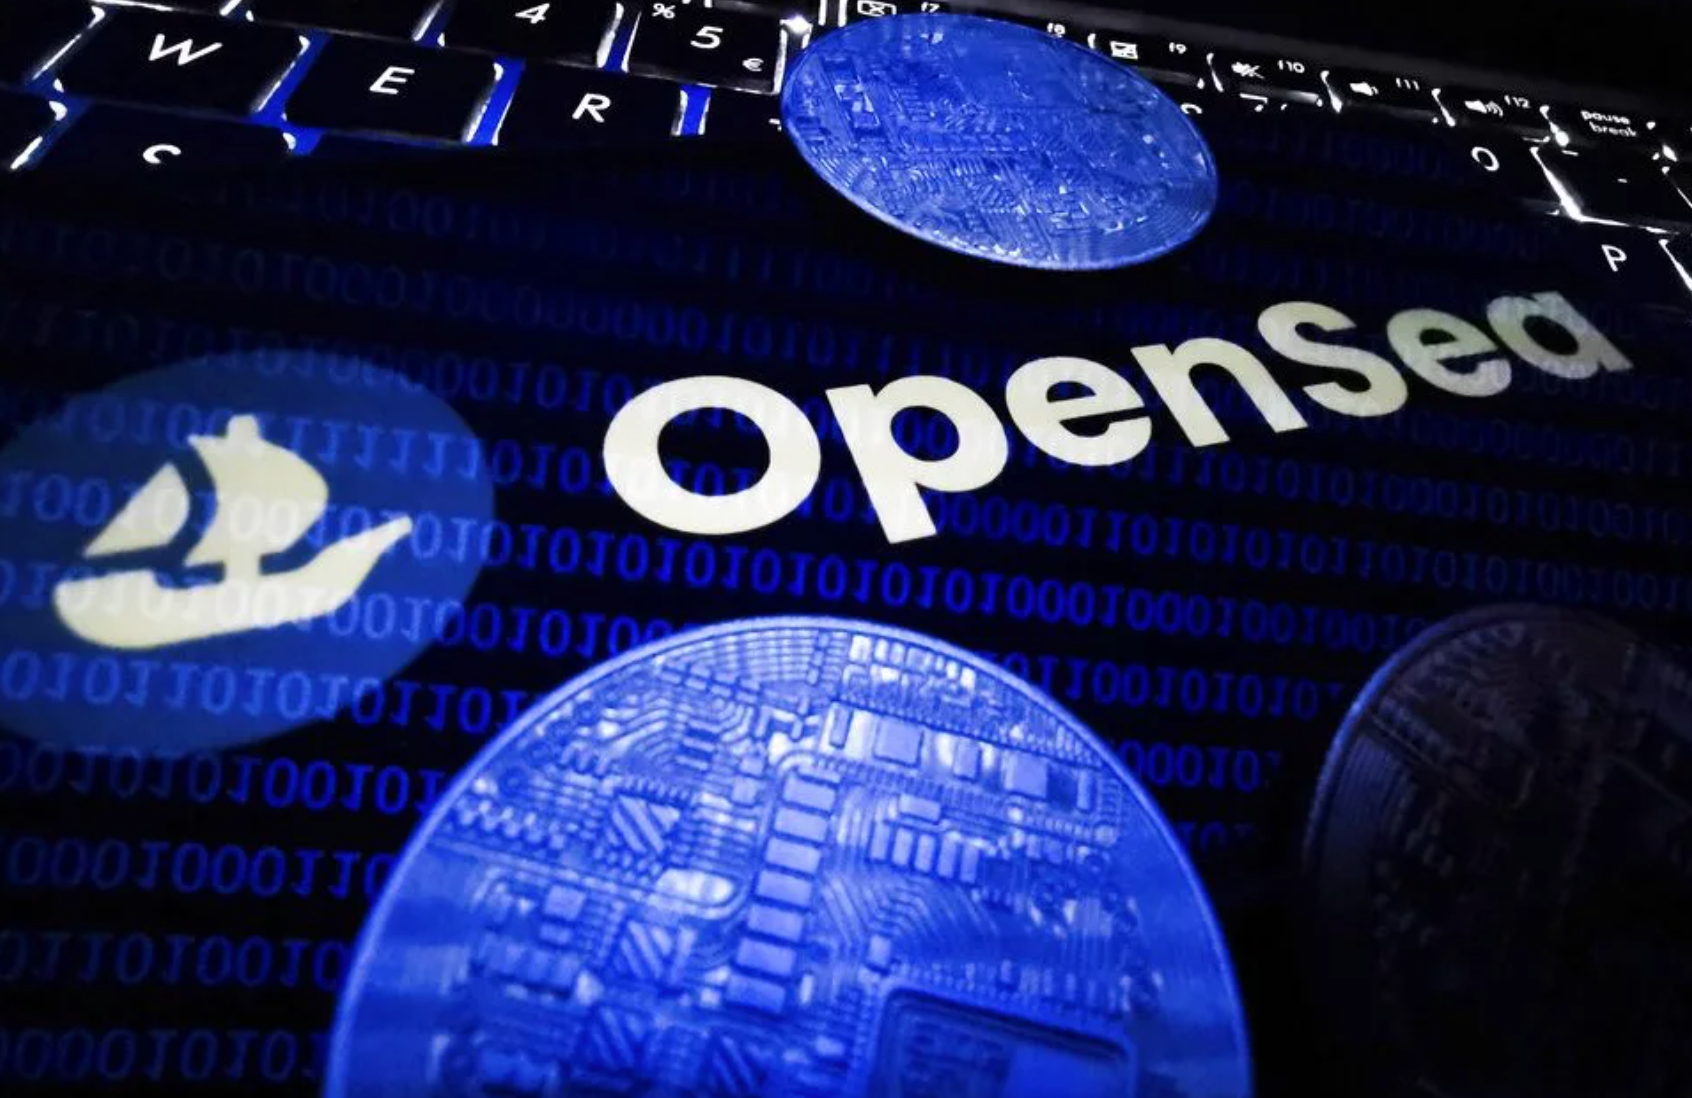 Read more about the article Το στέλεχος της OpenSea που καταδικάστηκε για συναλλαγές εμπιστευτικών πληροφοριών λαμβάνει ποινή φυλάκισης 3 μηνών και πρόστιμο 50.000 δολαρίων